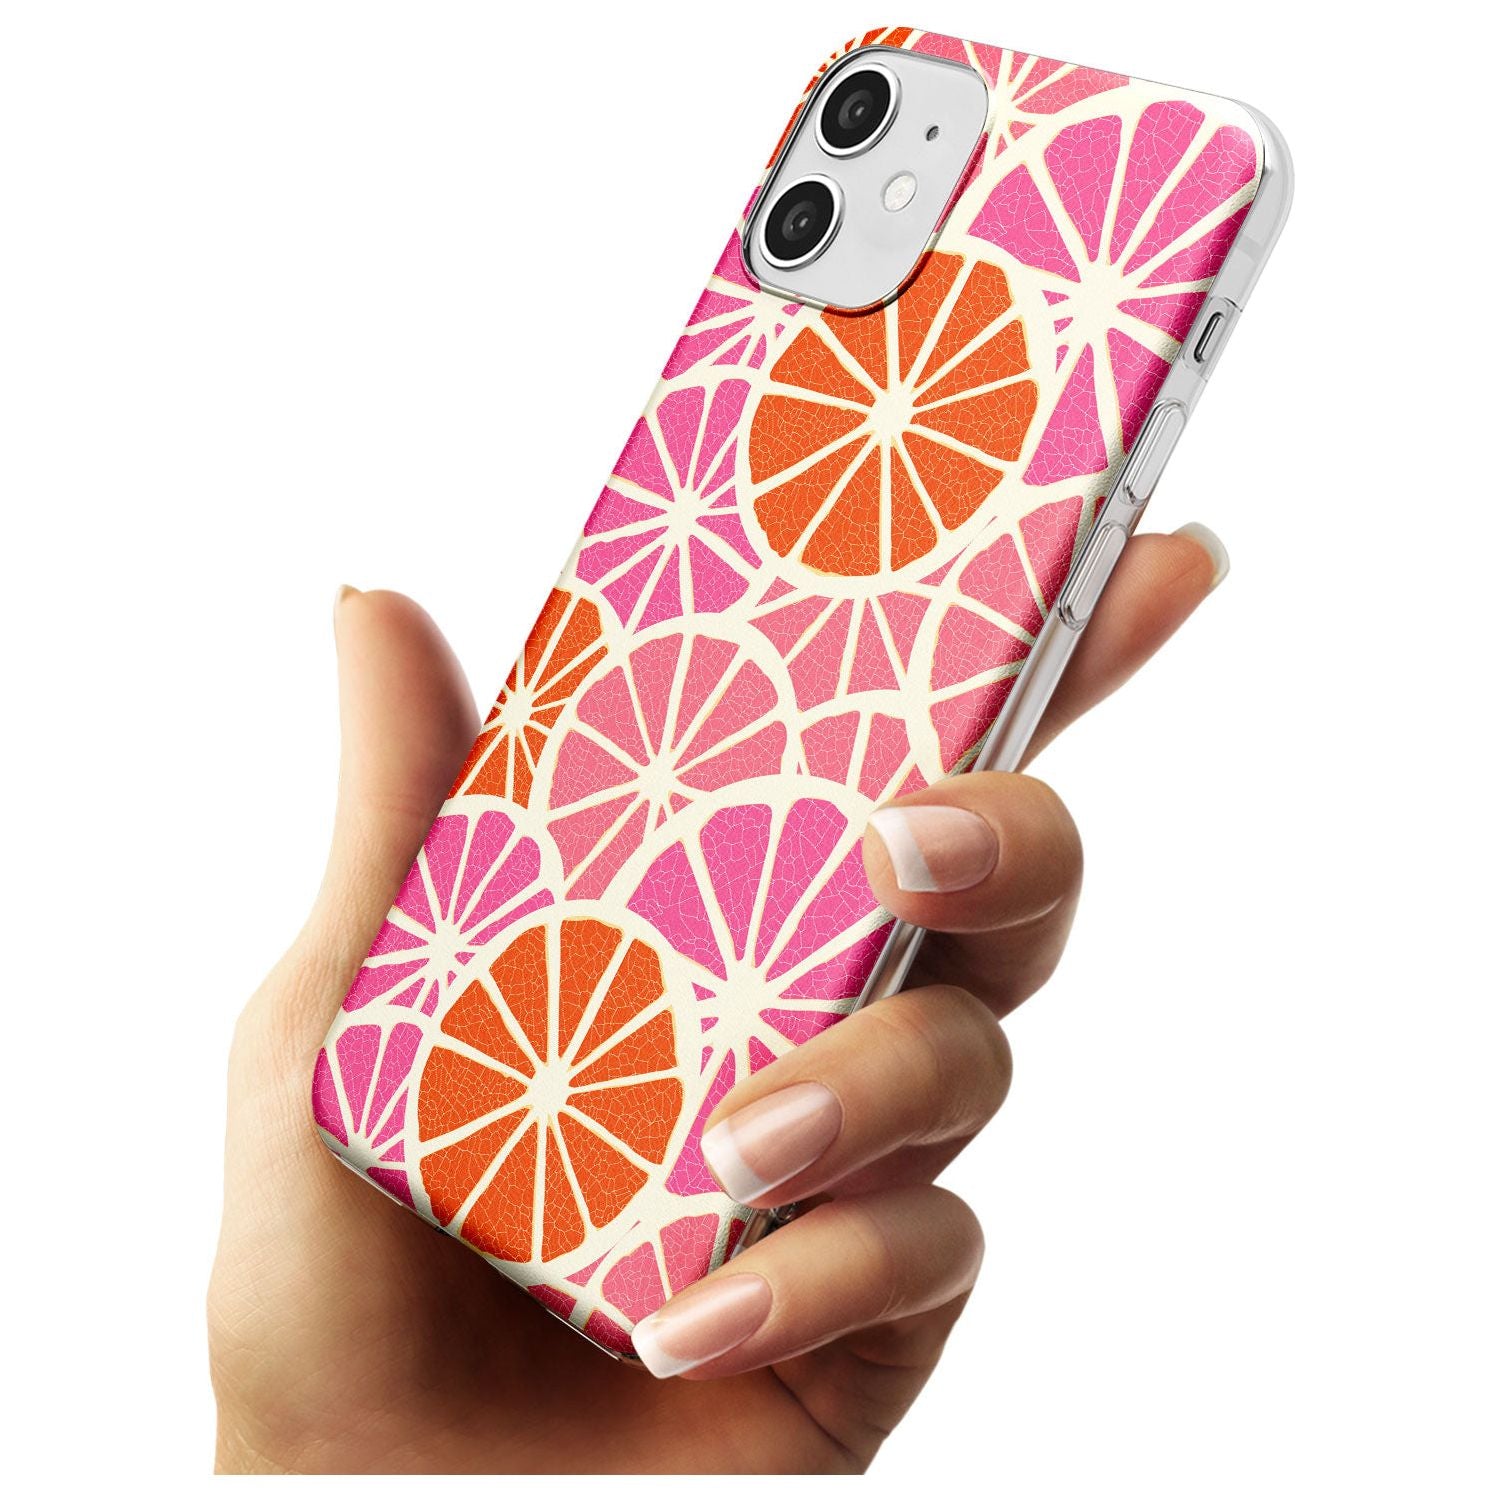 Citrus Slices Black Impact Phone Case for iPhone 11